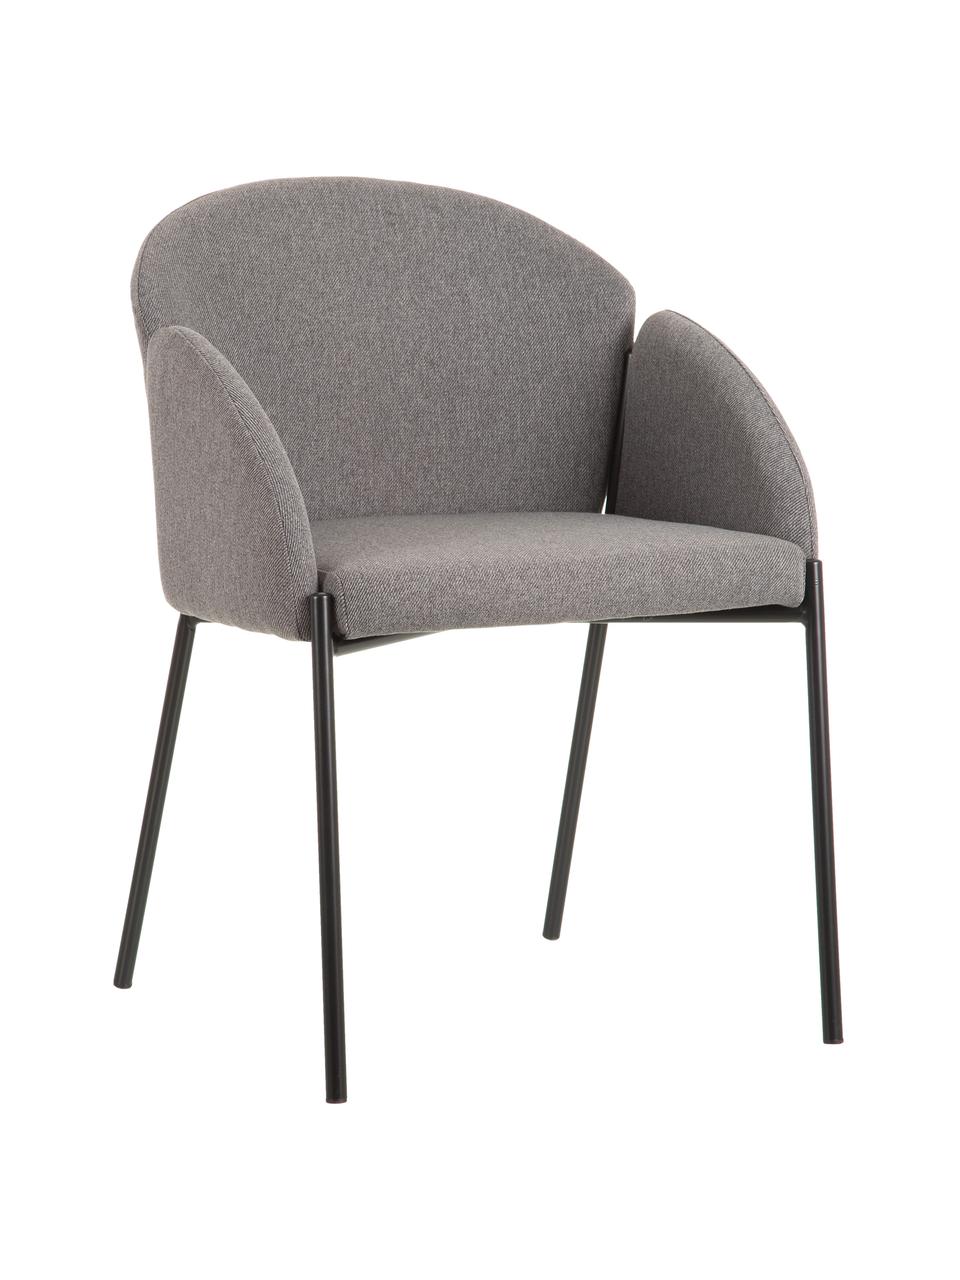 Krzesło tapicerowane z metalowymi nogami Malingu, Tapicerka: 95% poliester, 5% bawełna, Stelaż: metal lakierowany, Szary, S 60 x G 60 cm